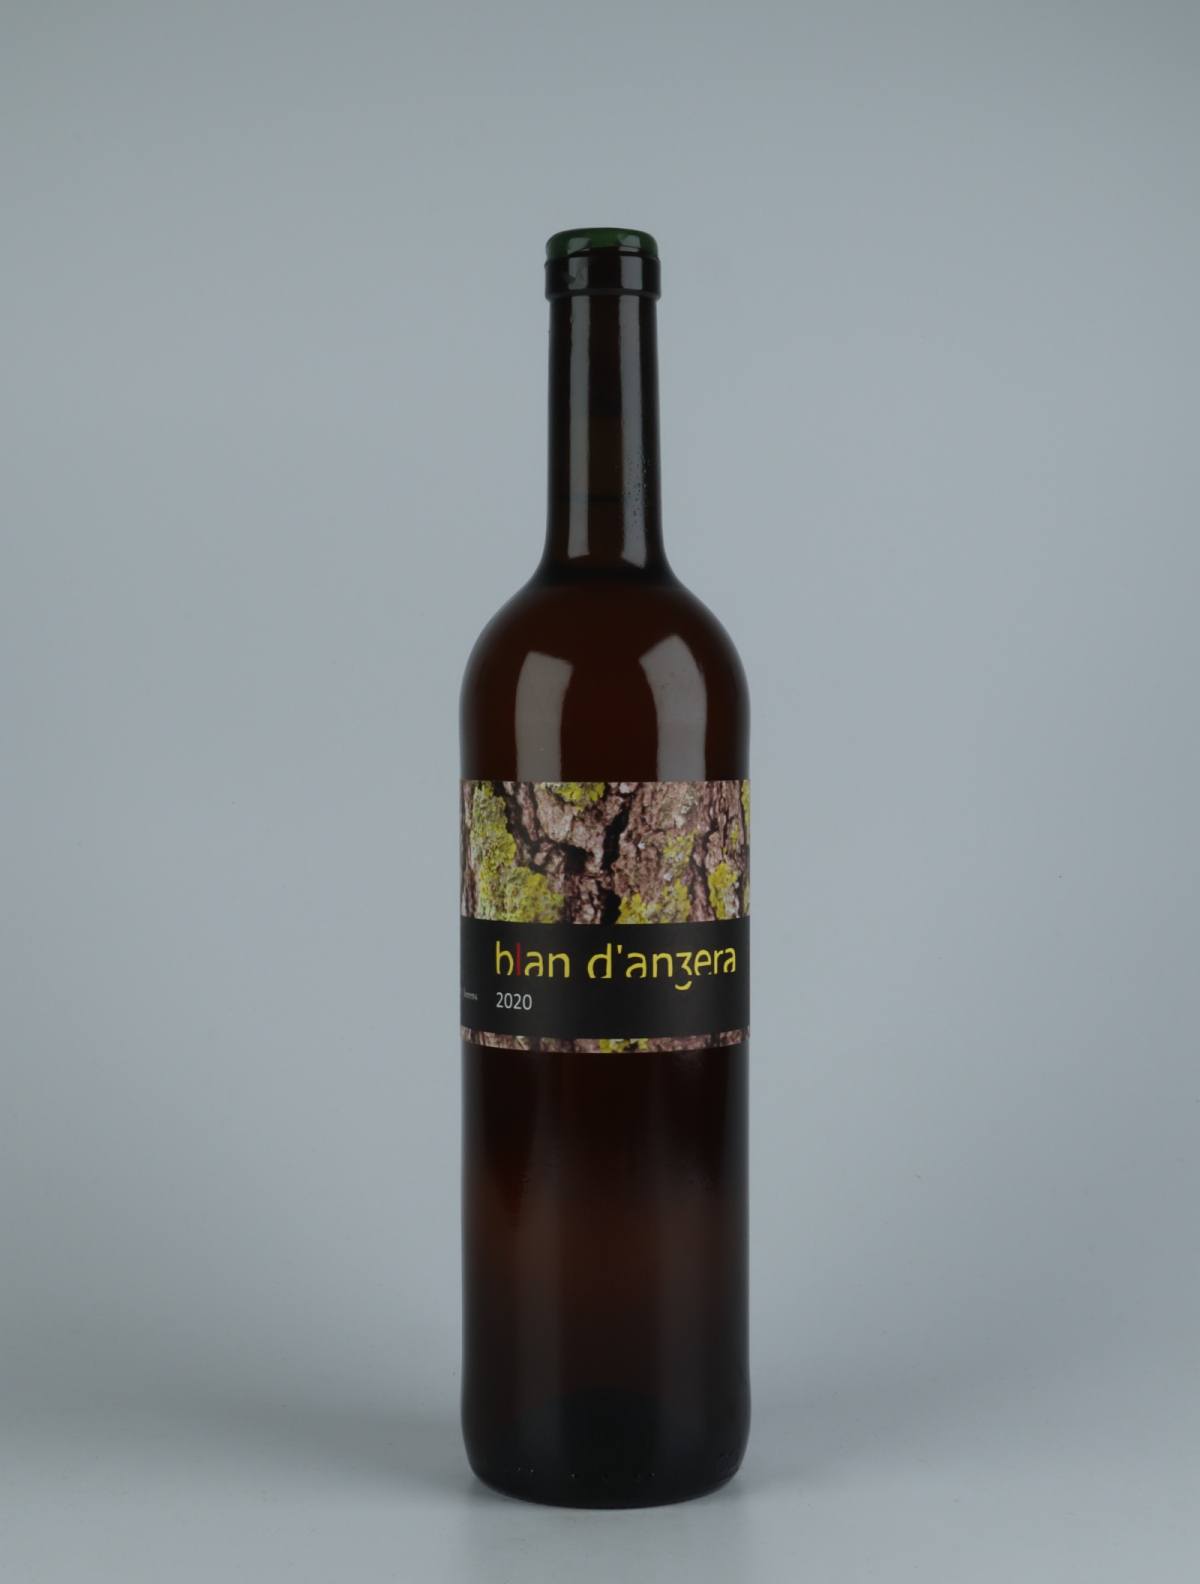 A bottle 2020 Blan d'Anzera Orange wine from , Catalonia in Spain